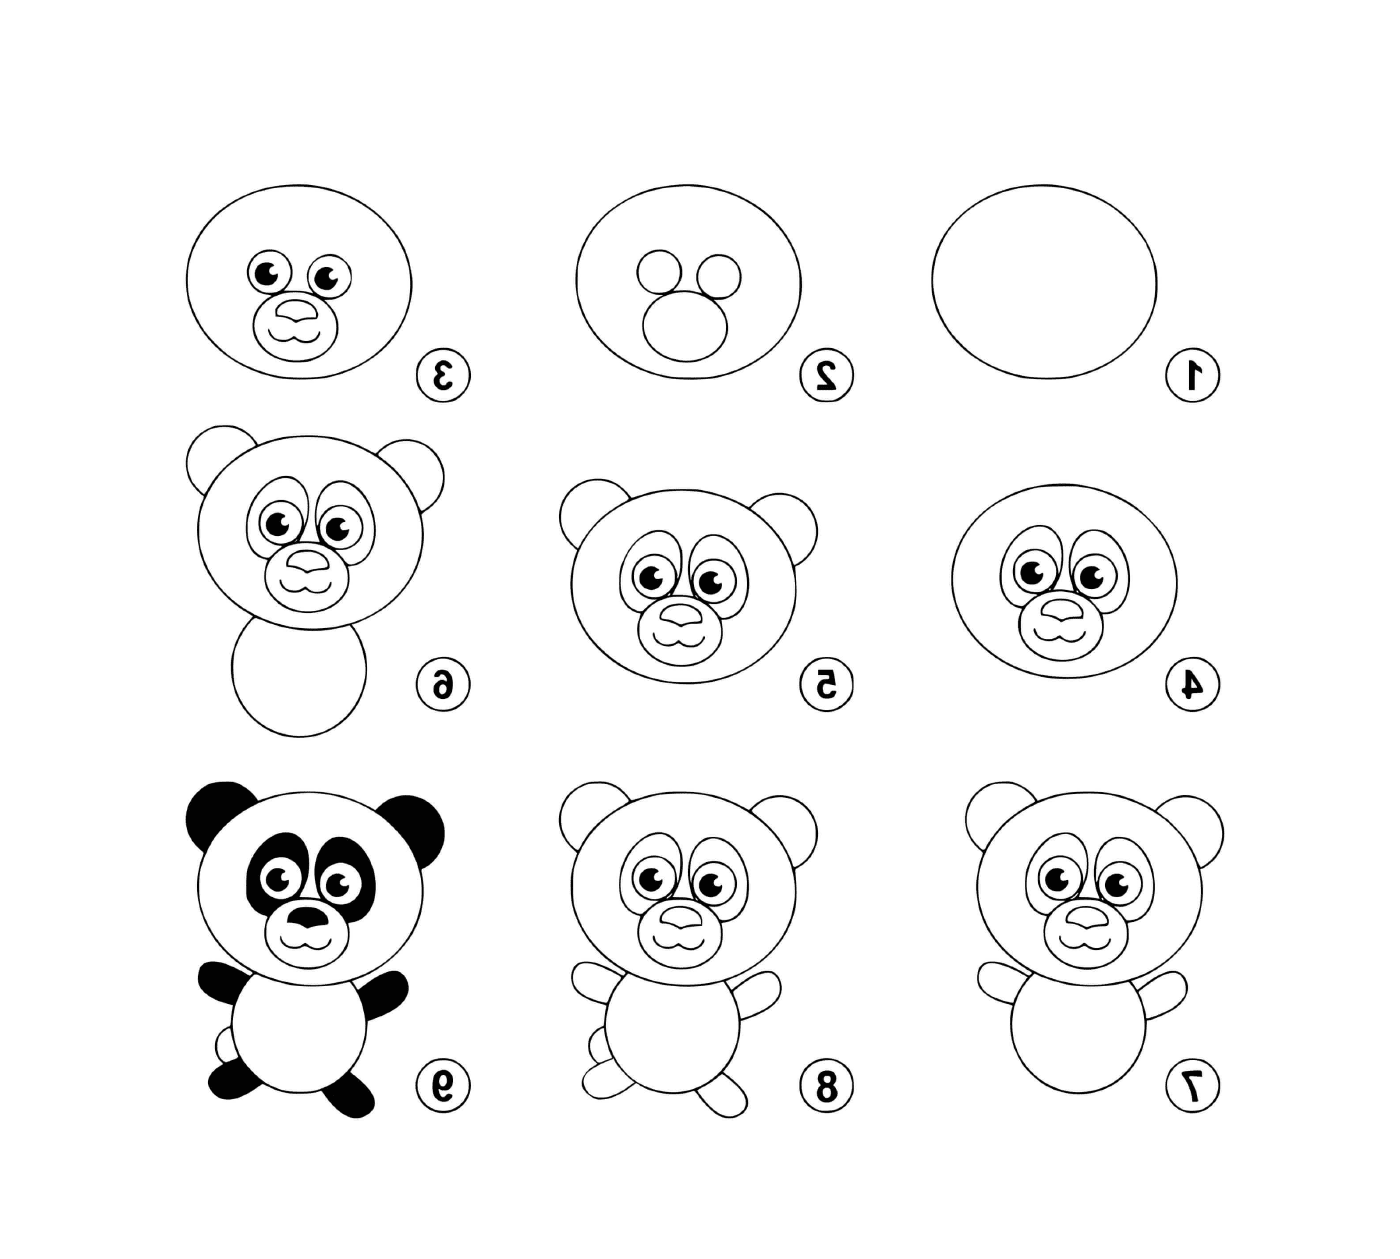  Ganz ruhig, einen Panda zeichnen 